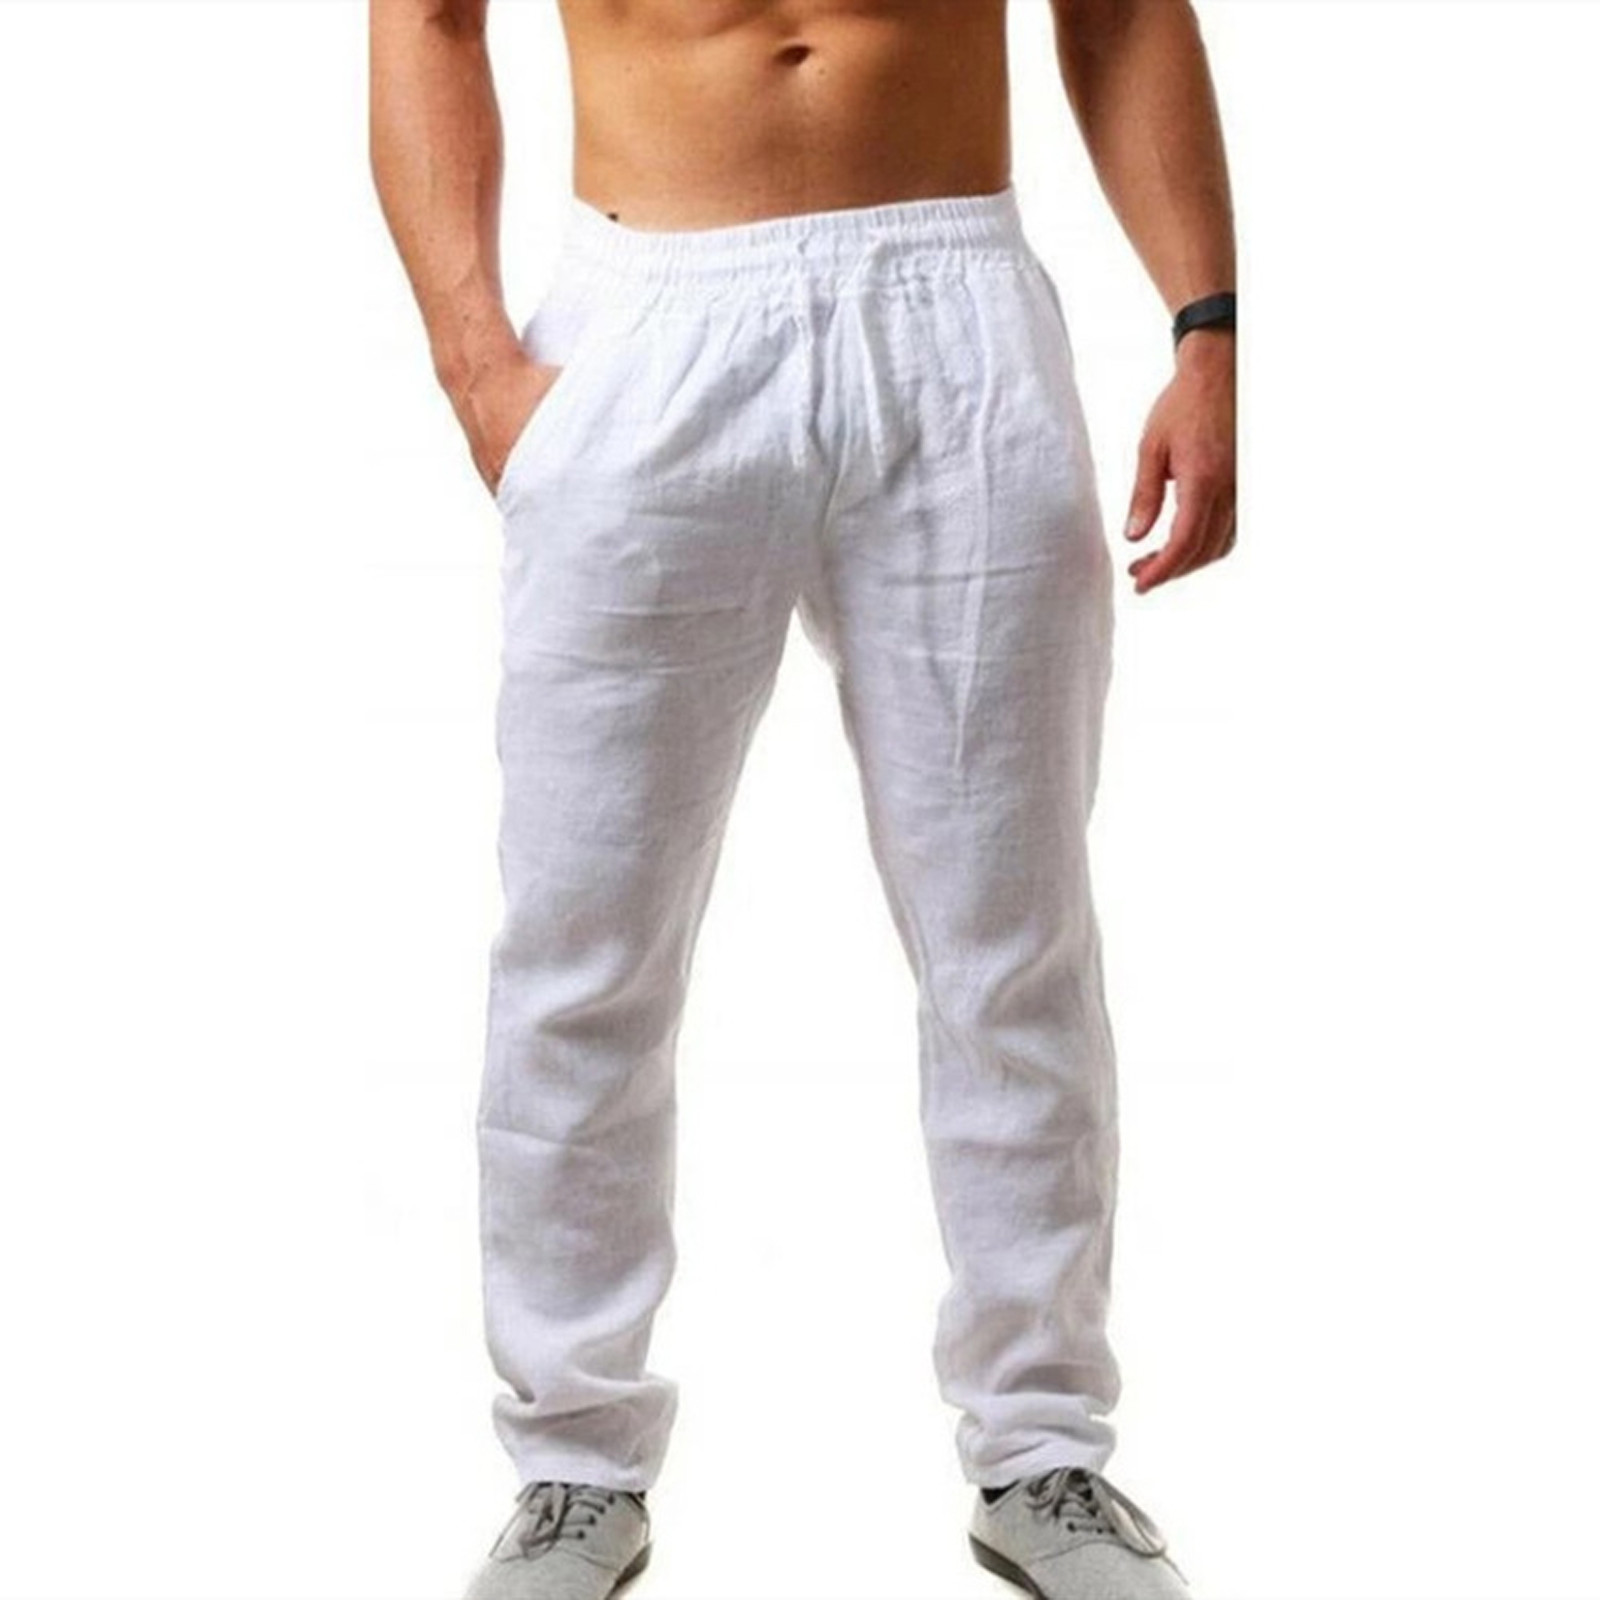 amidoa Men's Solid Cotton Line Pants Elastic Waist Baggy Slacks Leisure ...